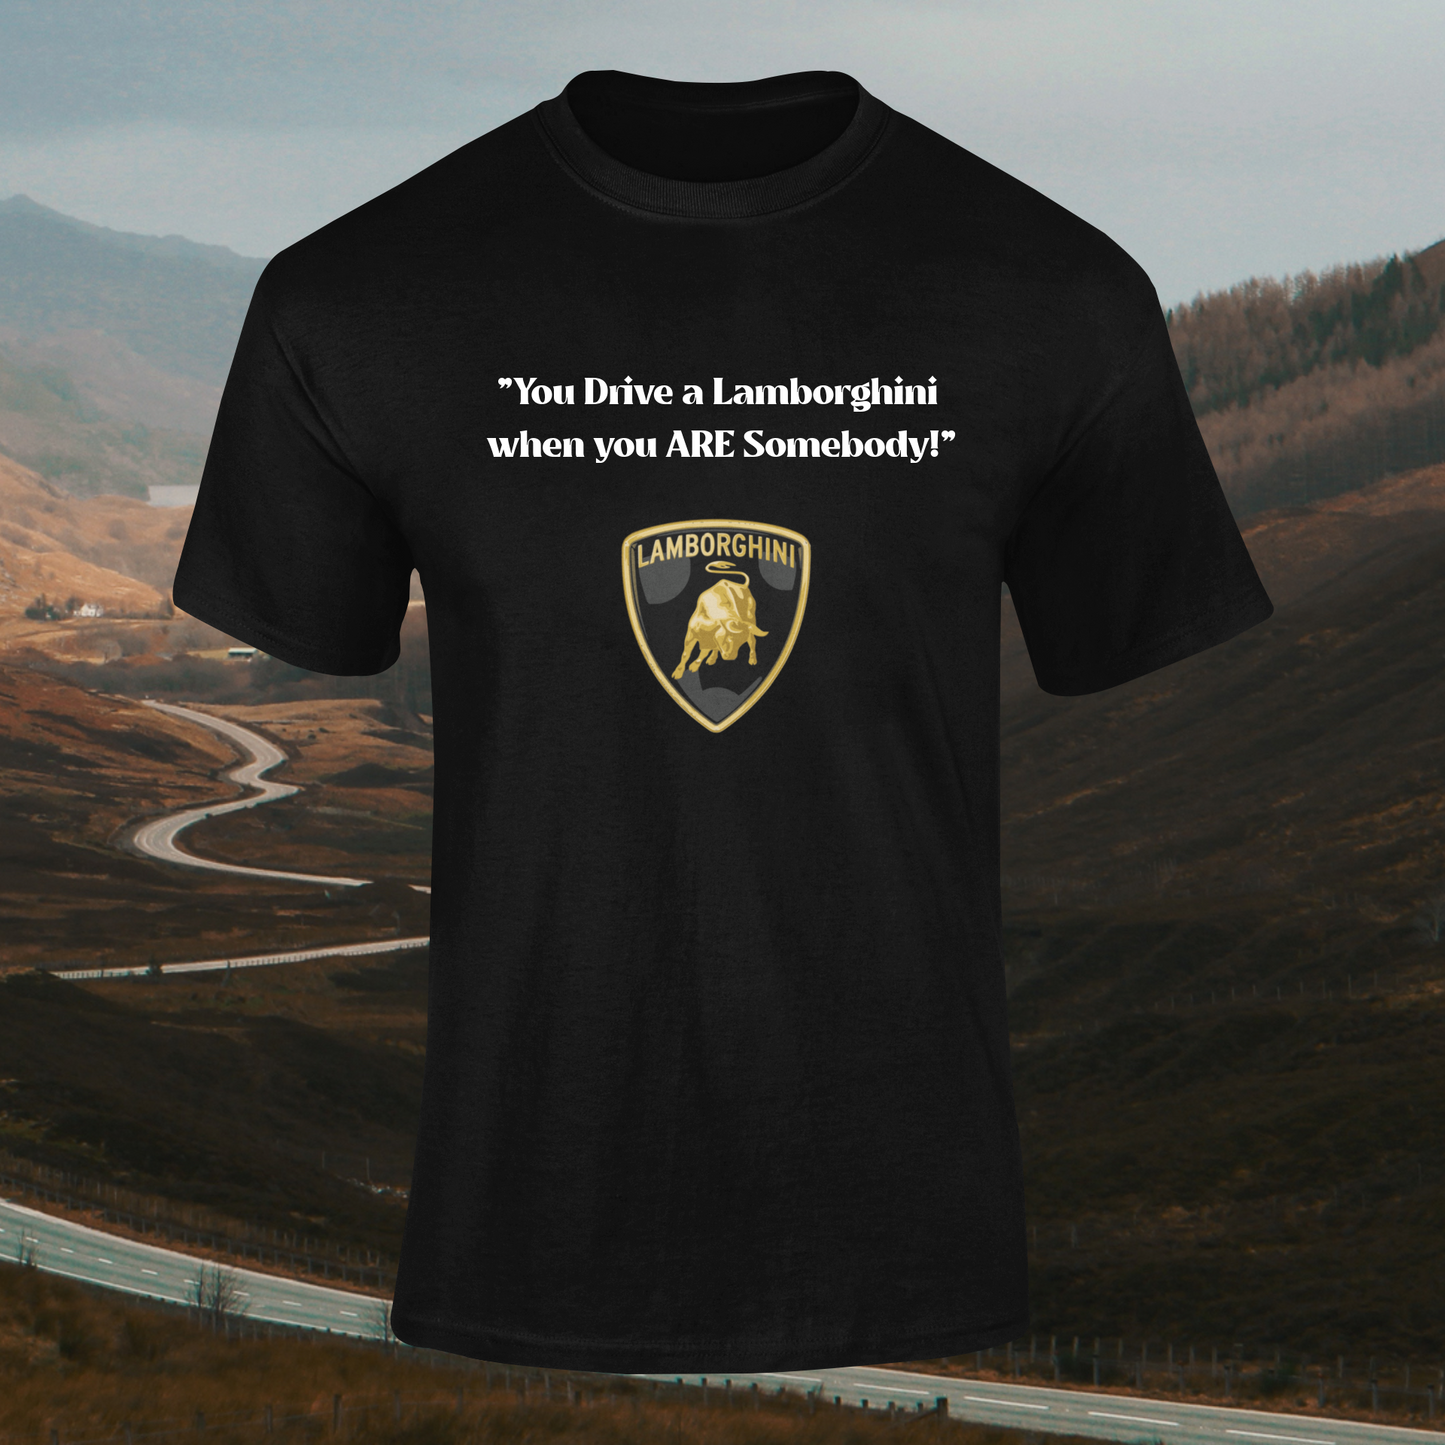 Lamborghini T-shirt